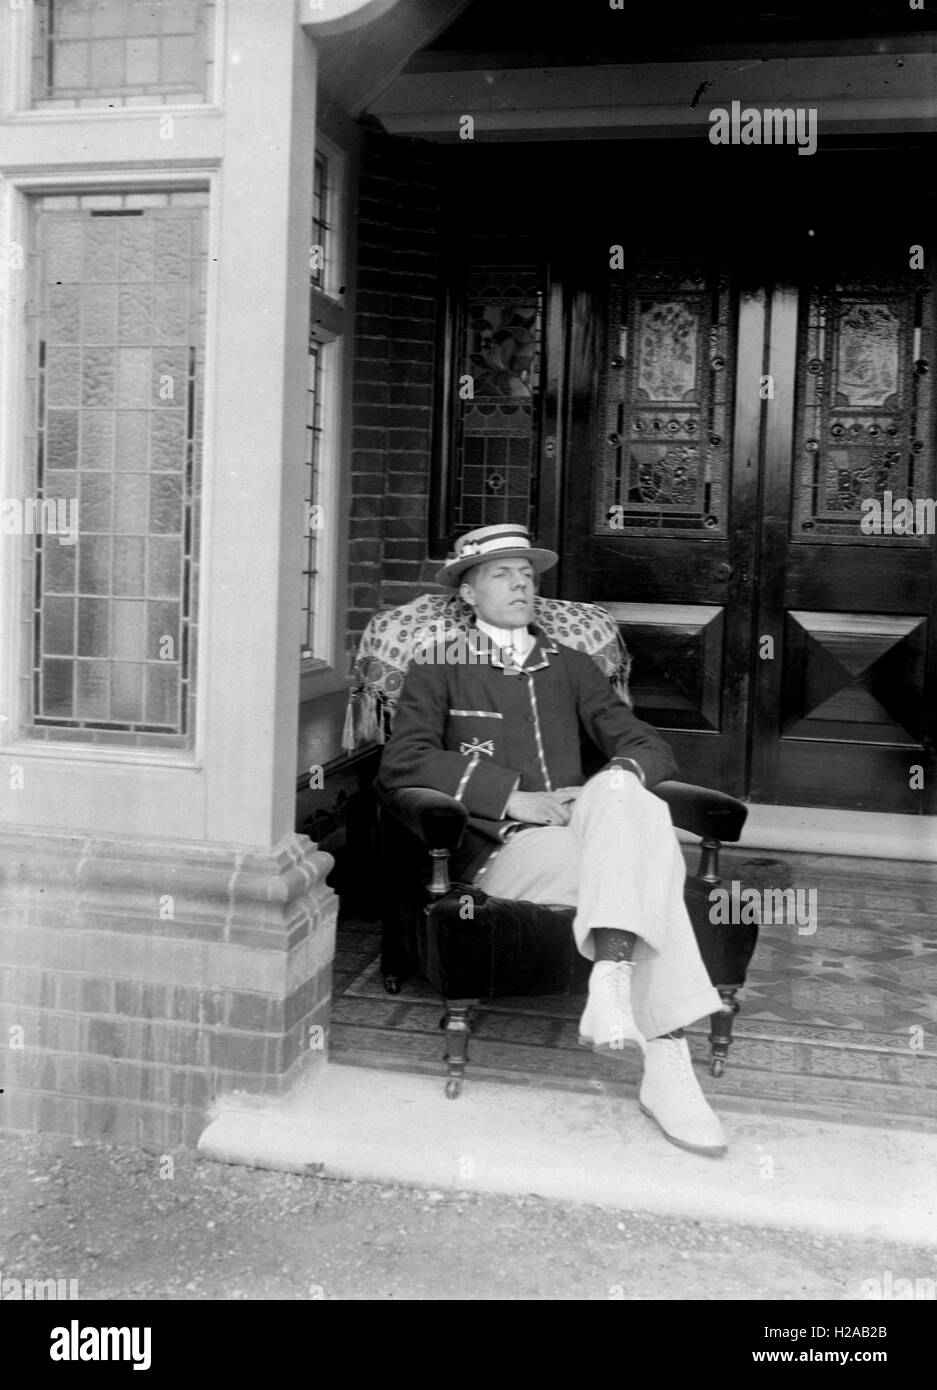 Homme intelligent dans un plaisancier hat pose sur sa porte. C1920. Photo par Tony Henshaw Banque D'Images